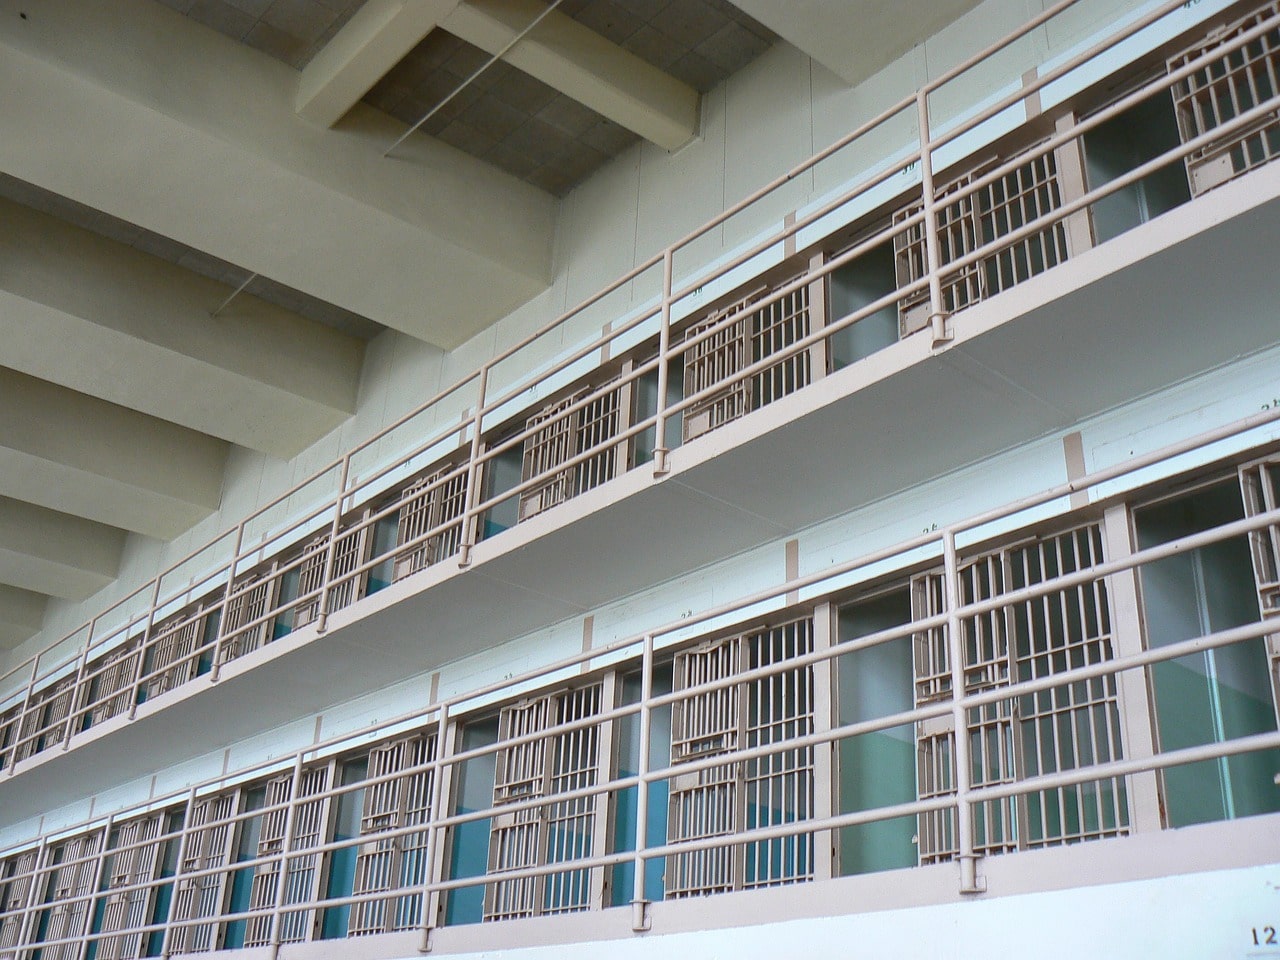 Arti Mimpi Masuk Penjara, Sebuah Penafsiran Simbolik